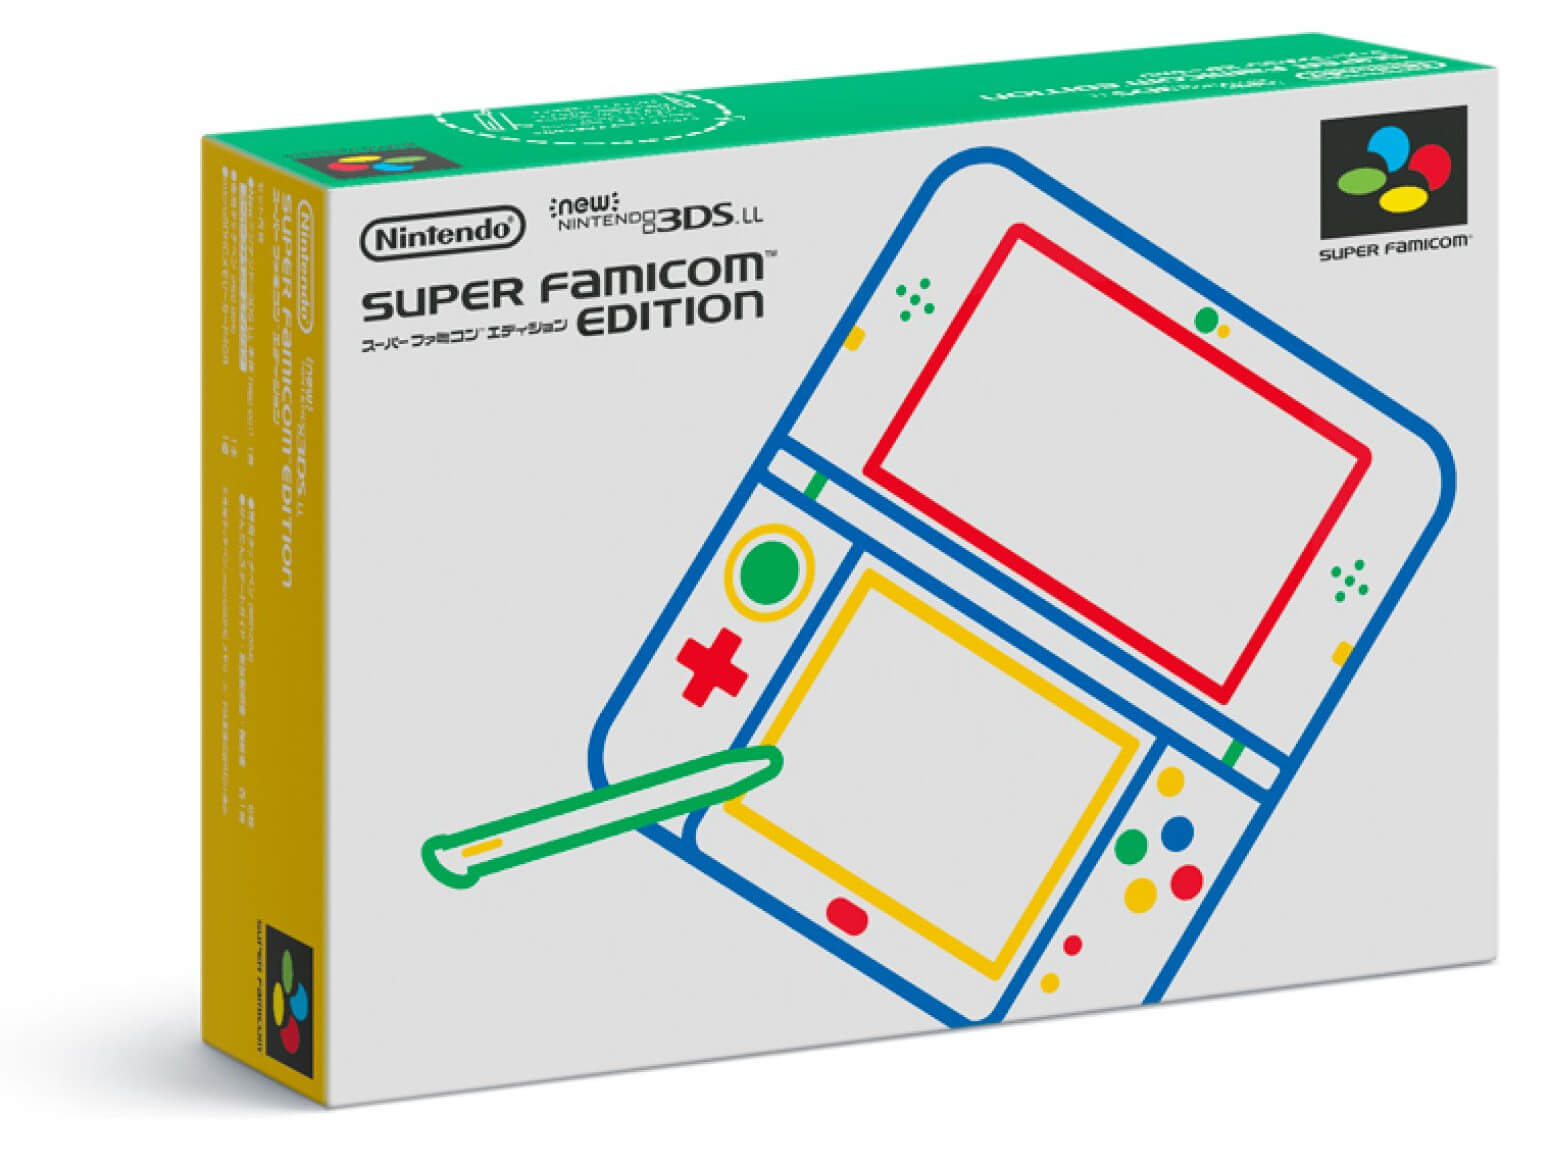 Caixa do New Nintendo 3DS especial Super Famicom